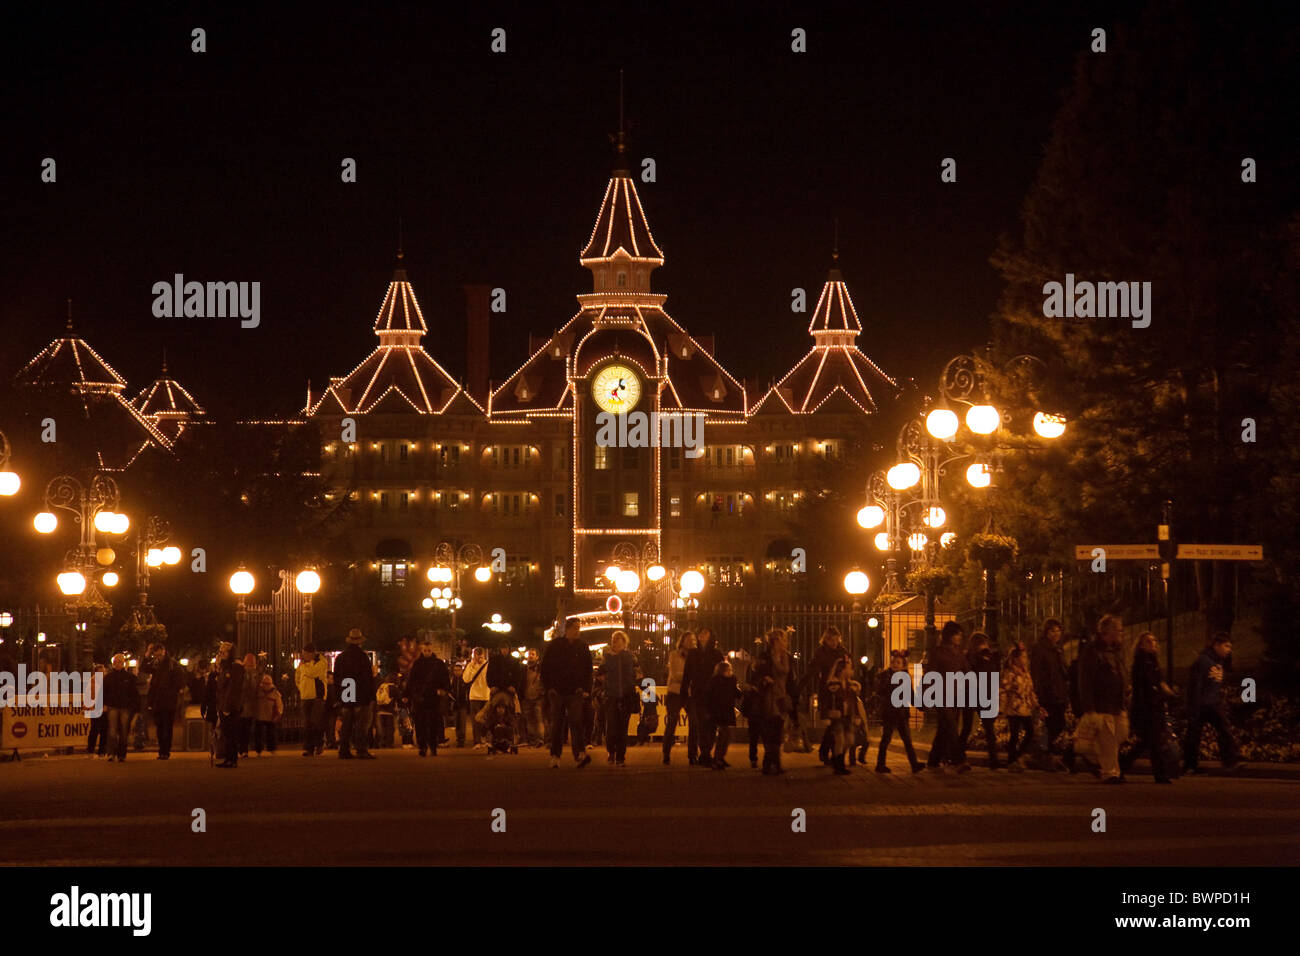 Les gens de quitter le parc Disneyland Paris à l'heure de fermeture, Disneyland Paris, France Banque D'Images